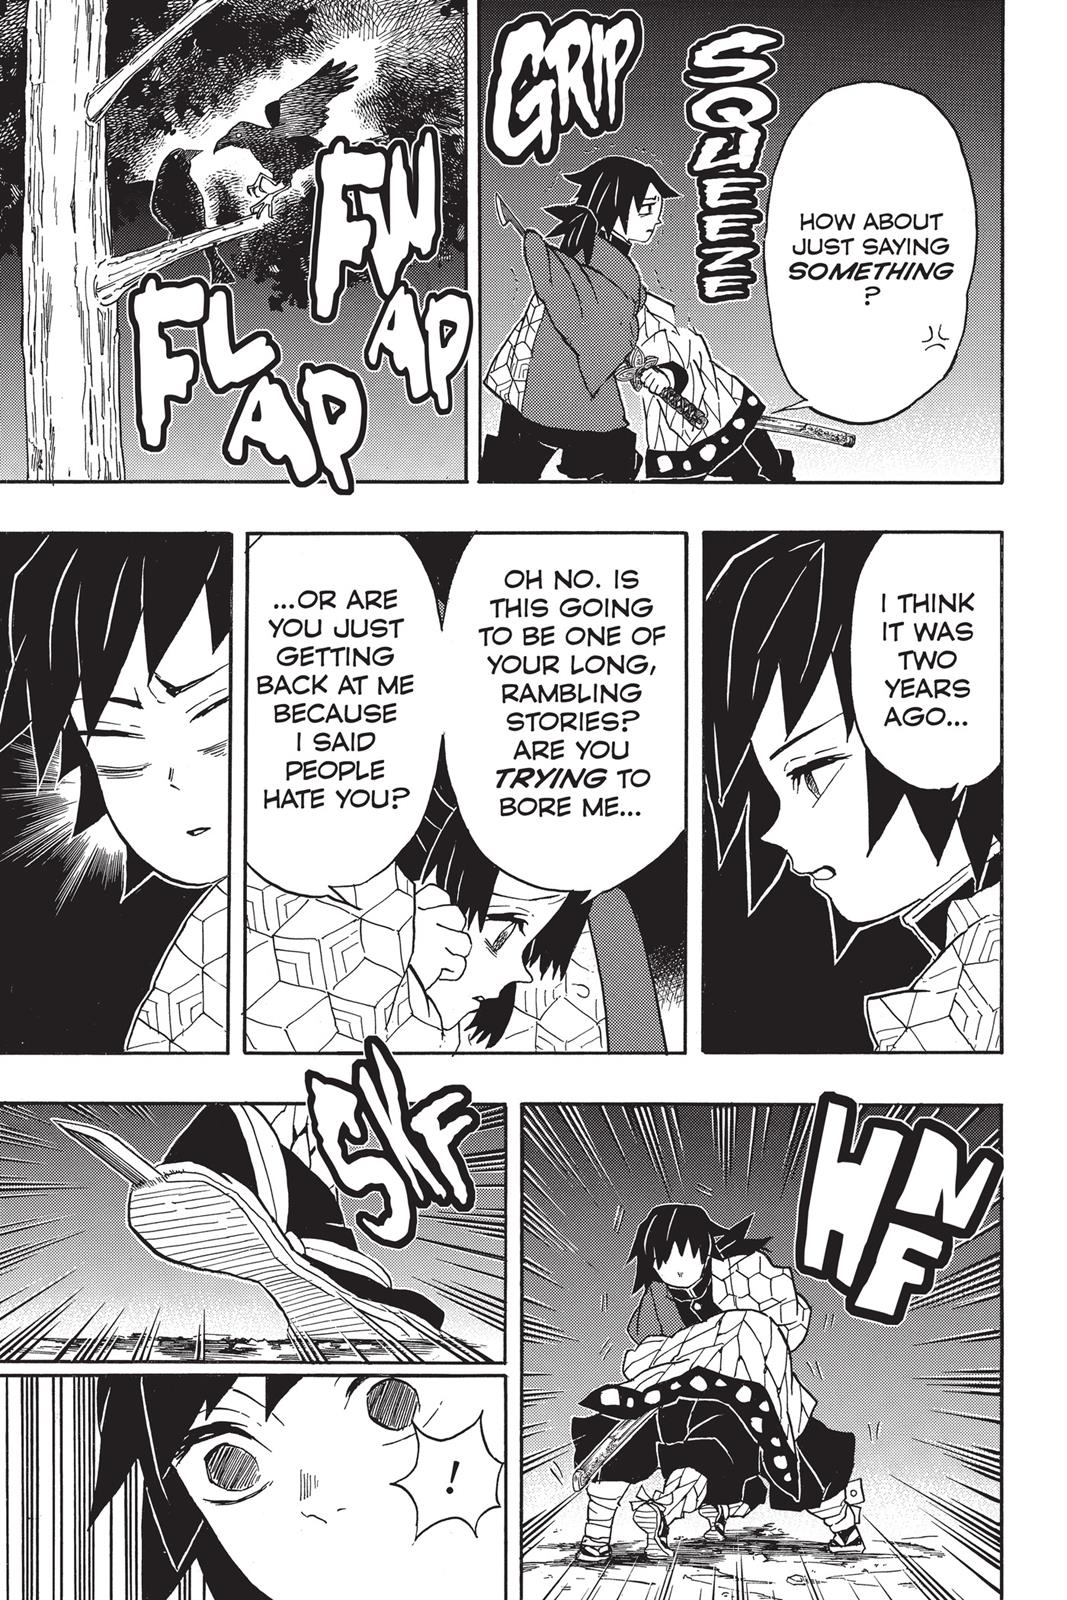 Demon Slayer Manga Manga Chapter - 44 - image 12